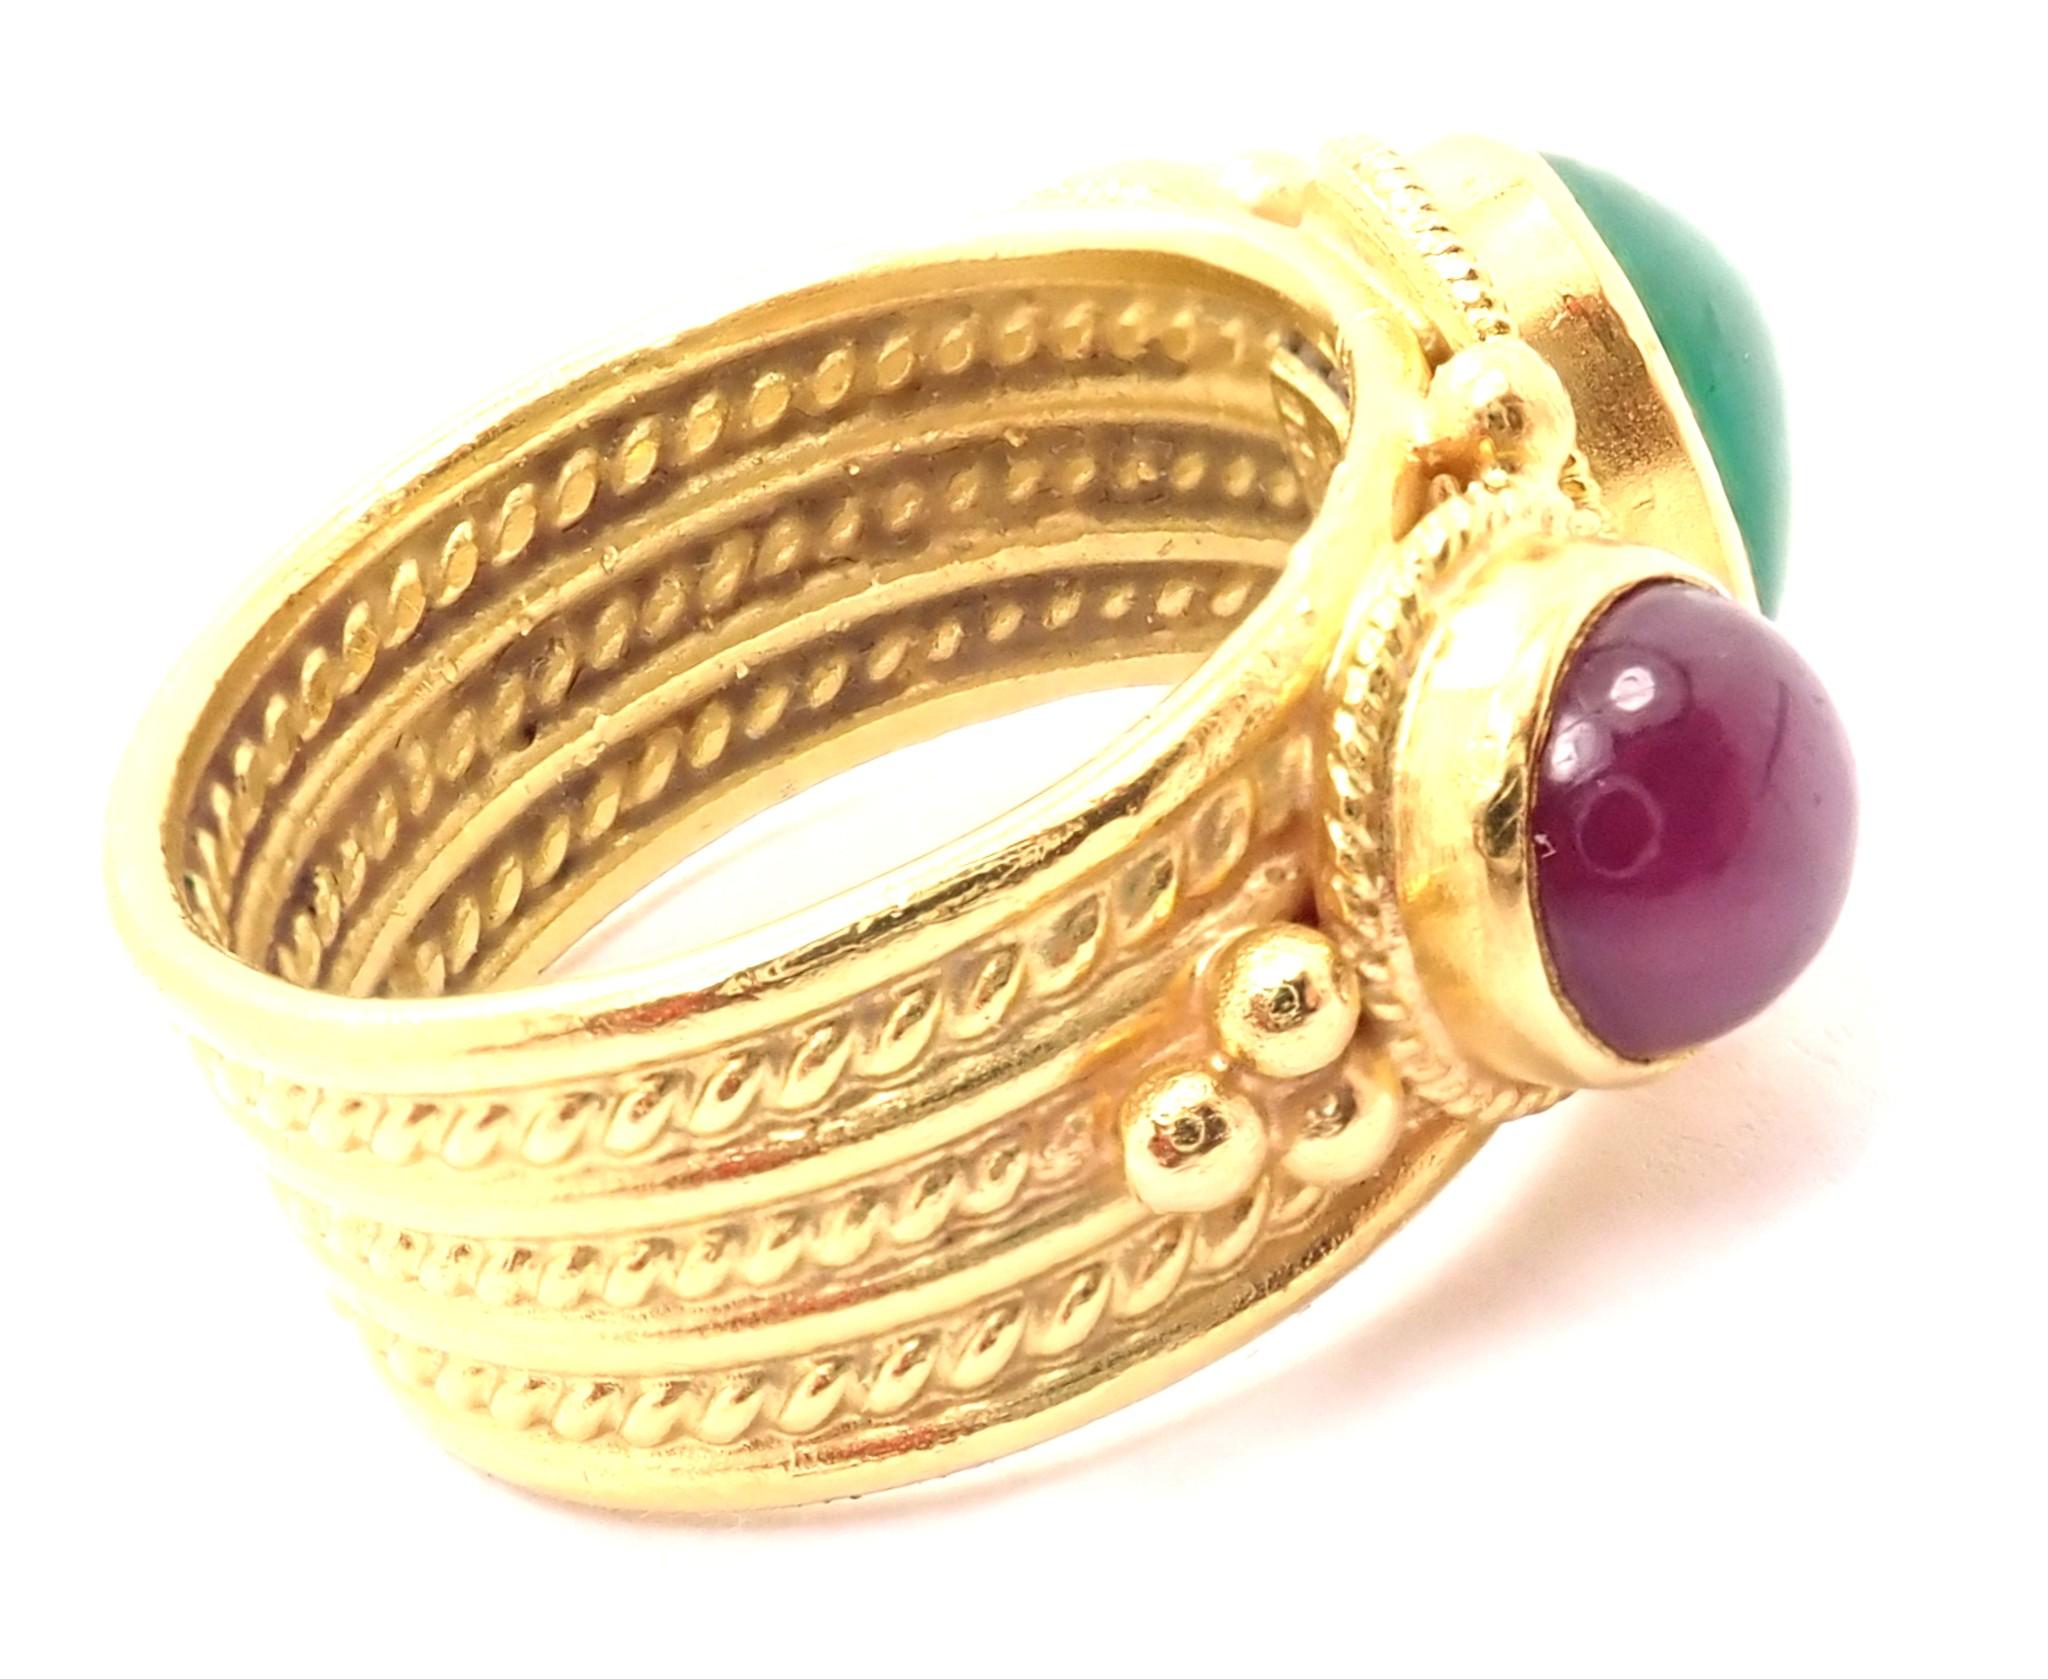 Vintage 18k Yellow Gold Ruby Emerald Band Ring by Ilias Lalaounis. 
Avec 1 cabochon ovale émeraude 10mm x 8mm
2 rubis cabochon ronds de 7 mm chacun
Détails : 
Taille de la bague : 5 3/4
Poids : 10.9 grammes
Largeur : 11 mm
Poinçons estampillés :